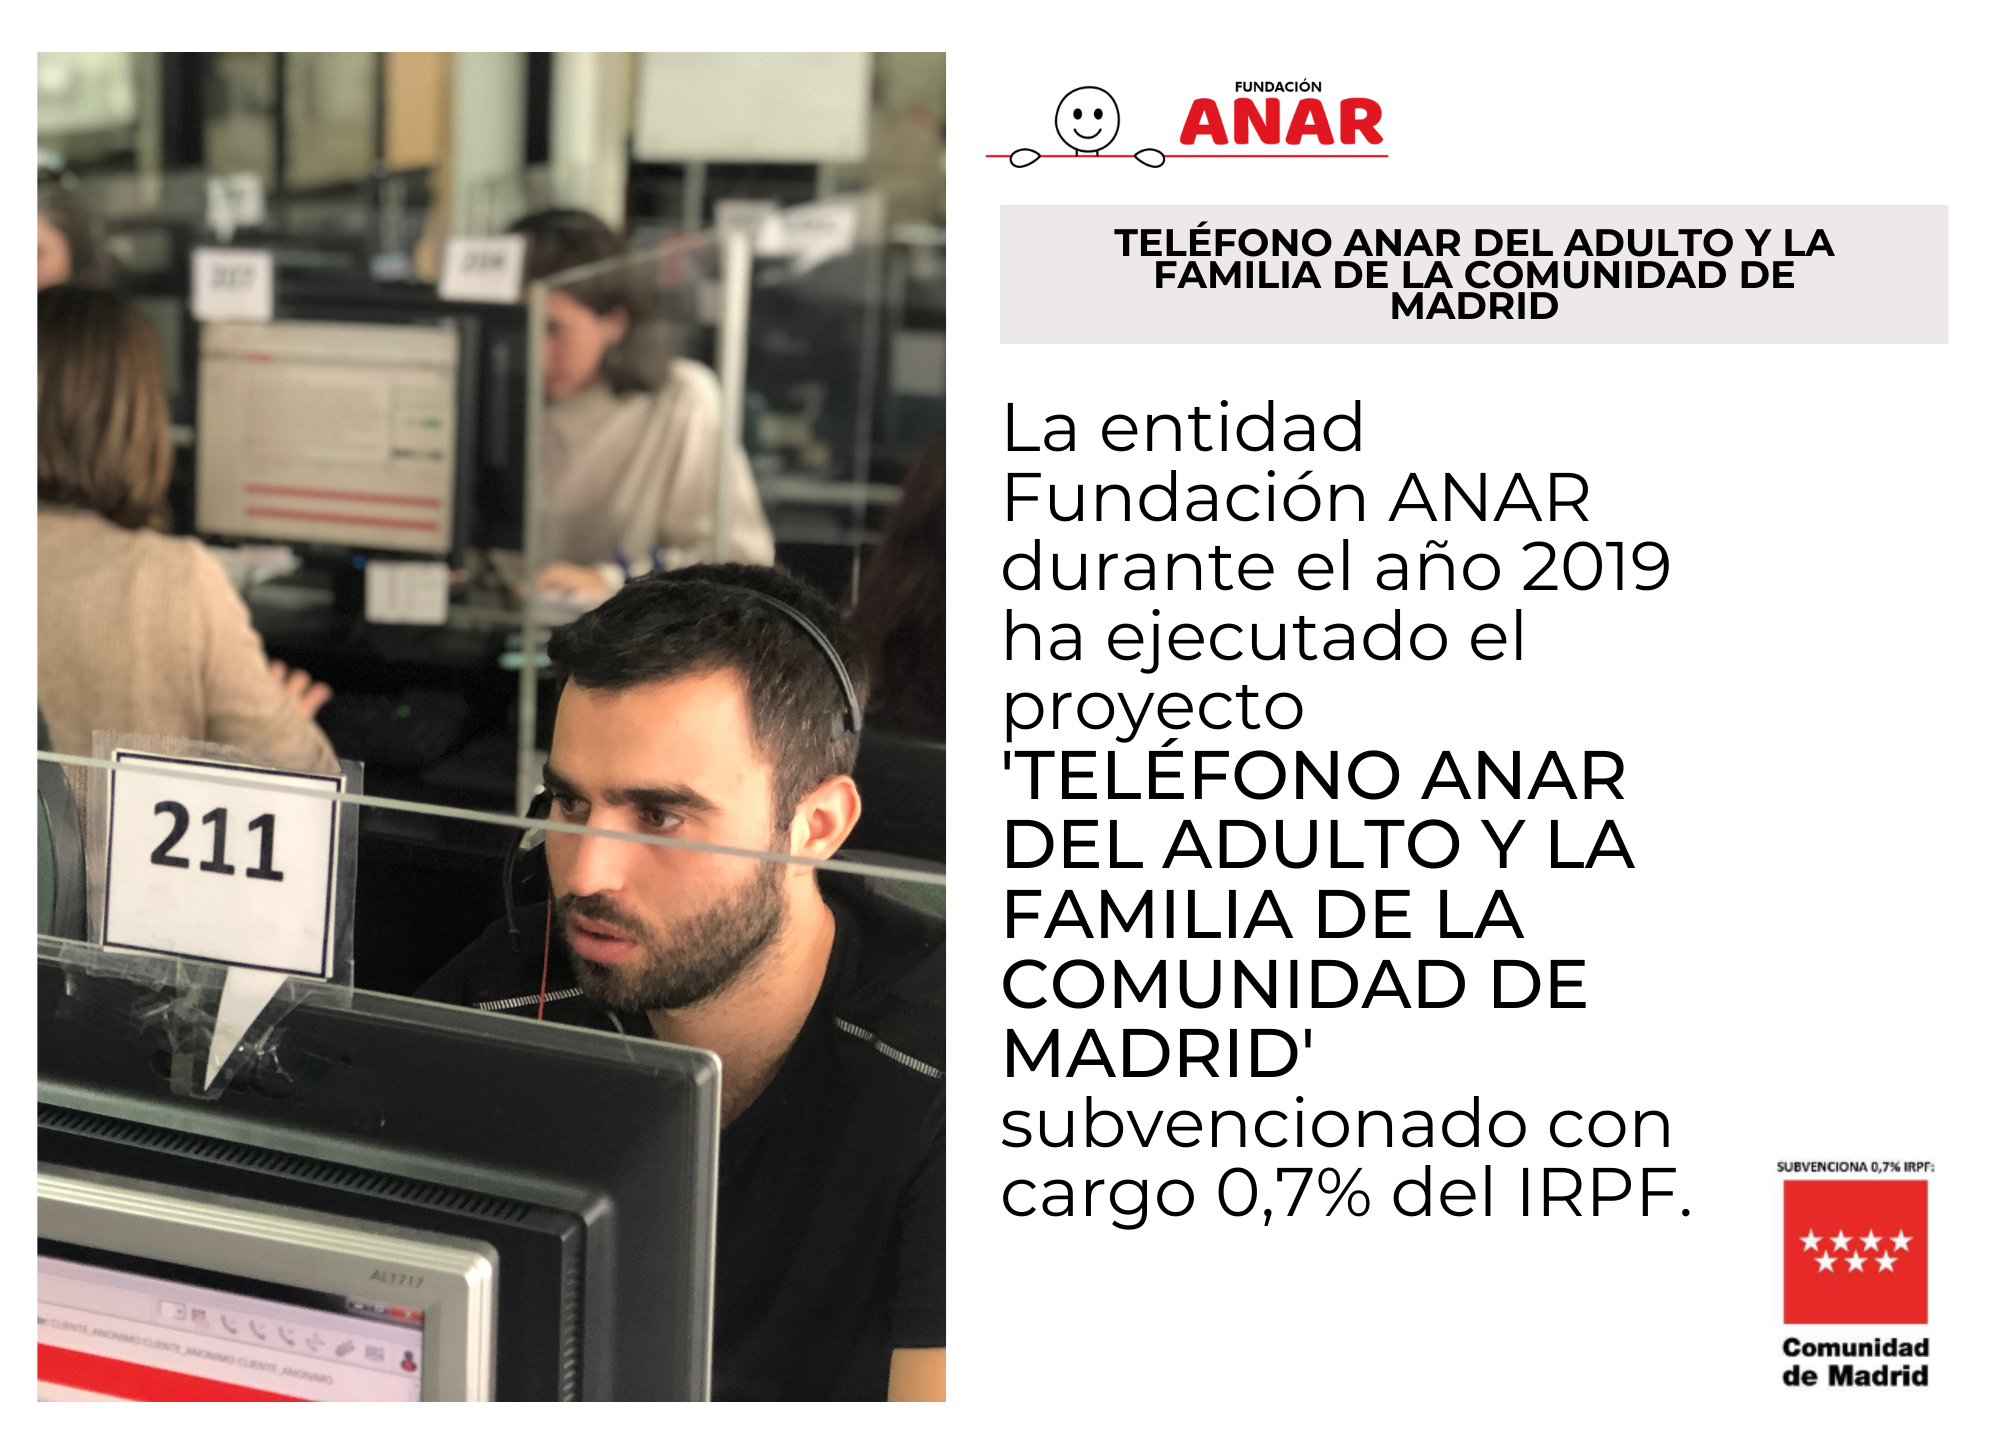 El Teléfono ANAR del Adulto y la Familia, subvencionado por la Comunidad de Madrid